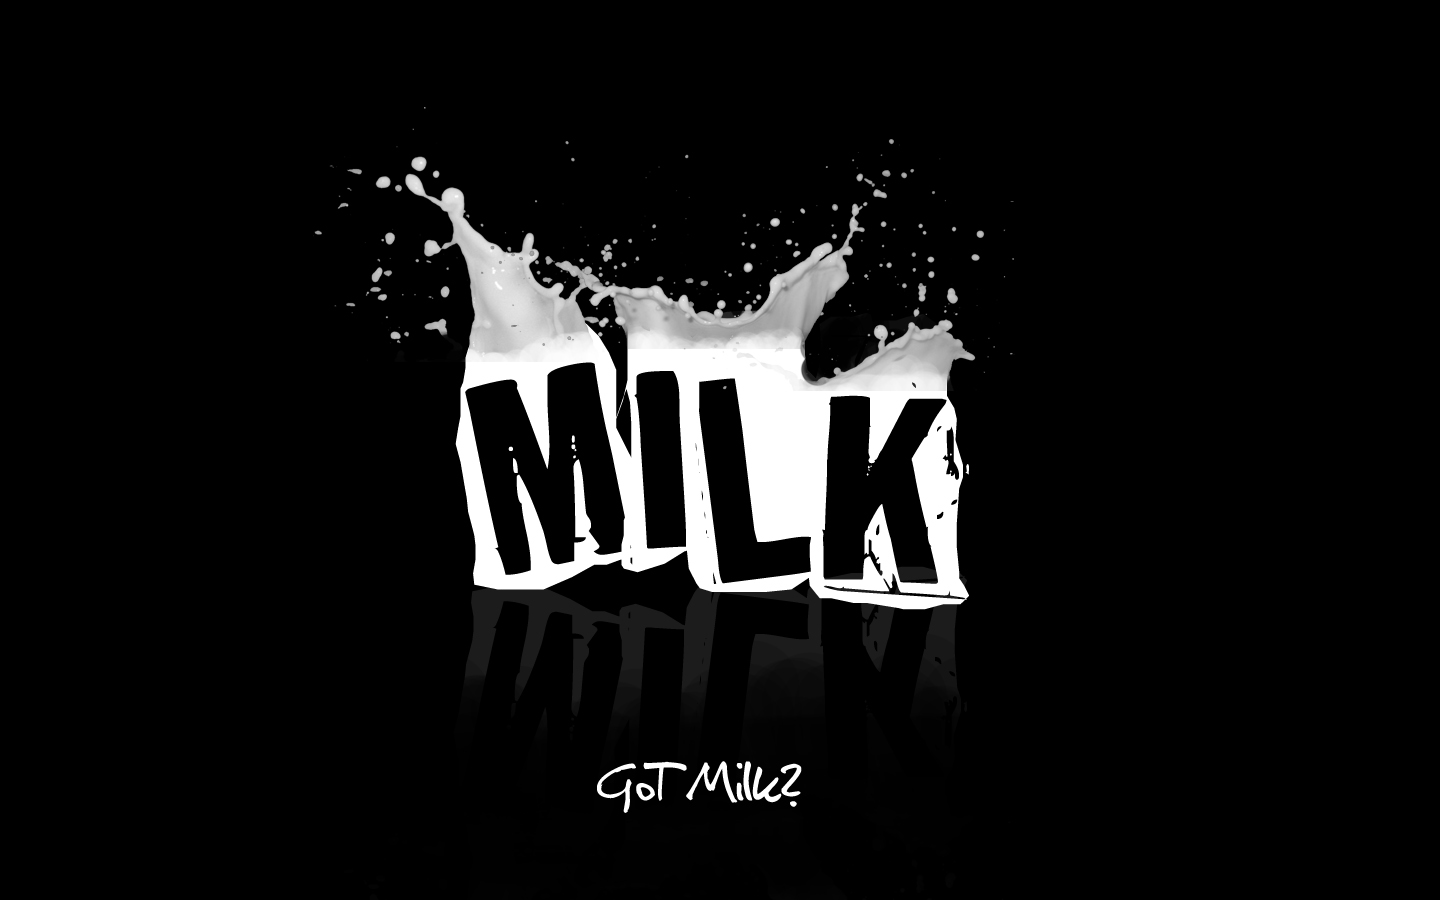 Got milk by justicebleeds on